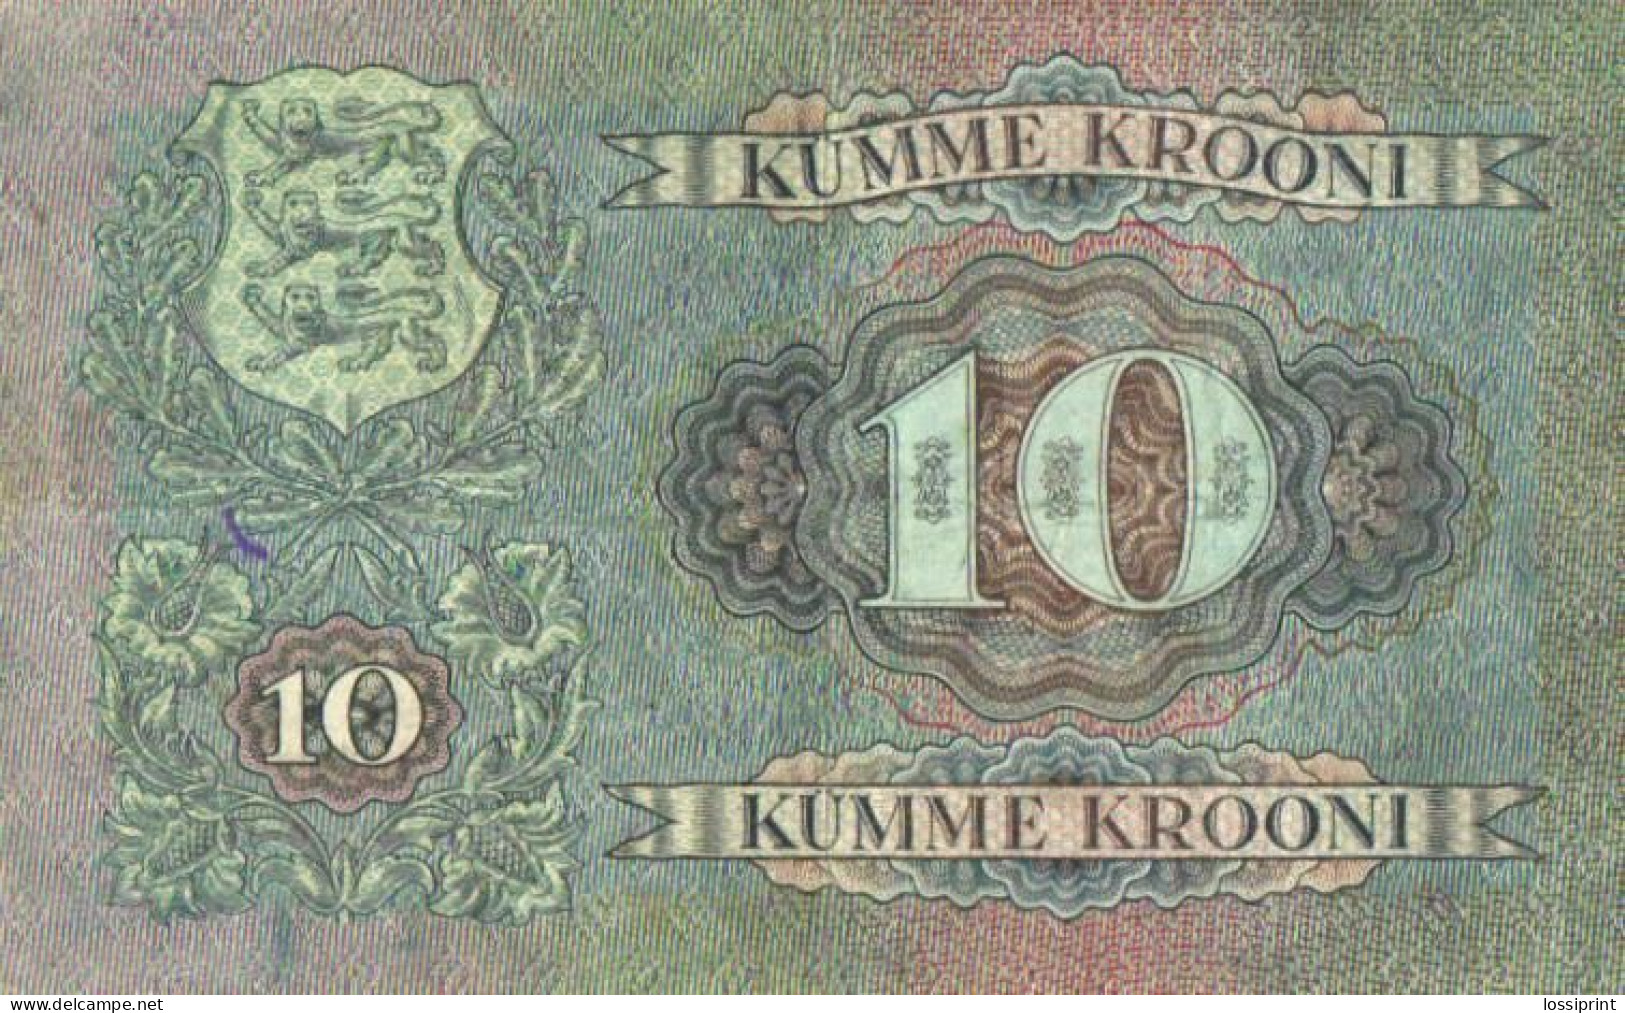 Estonia:10 Krooni 1937 - Estonia